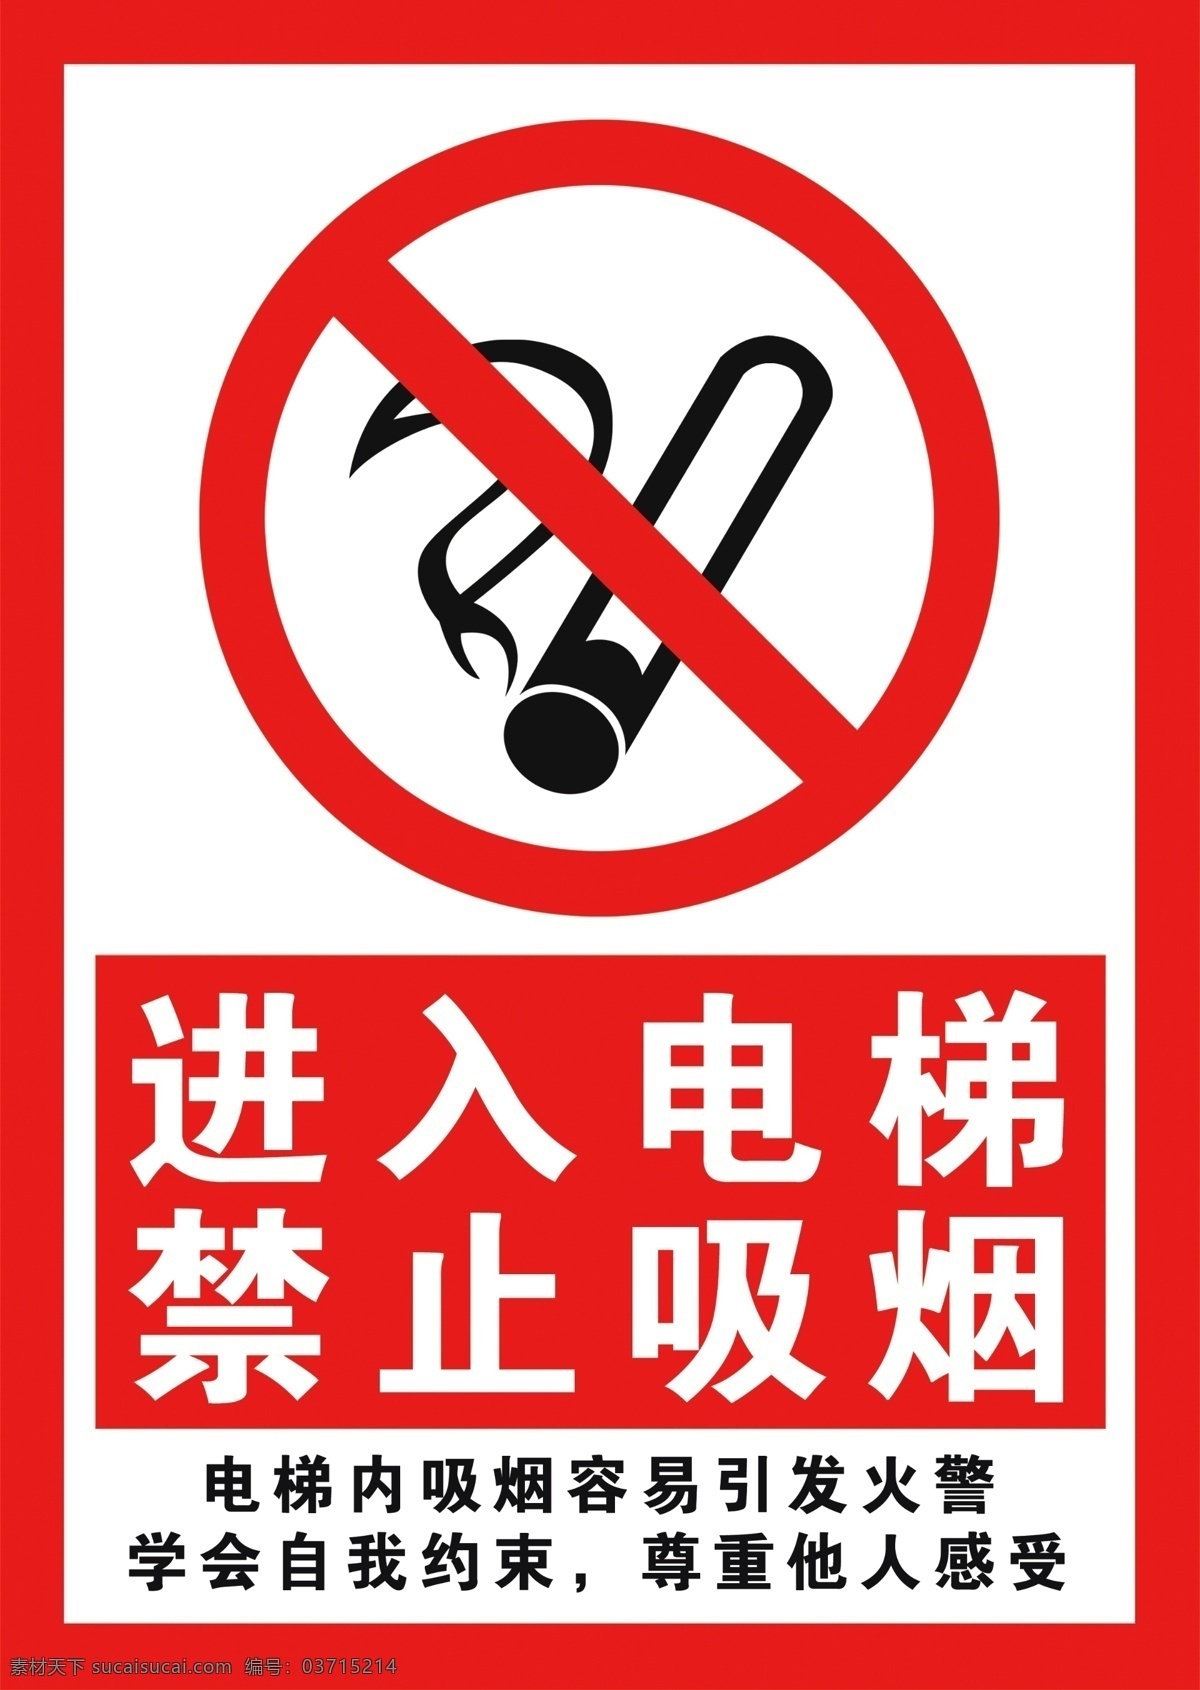 电梯禁烟标识 电梯 禁烟 进入电梯 禁止吸烟 标识 标志图标 公共标识标志